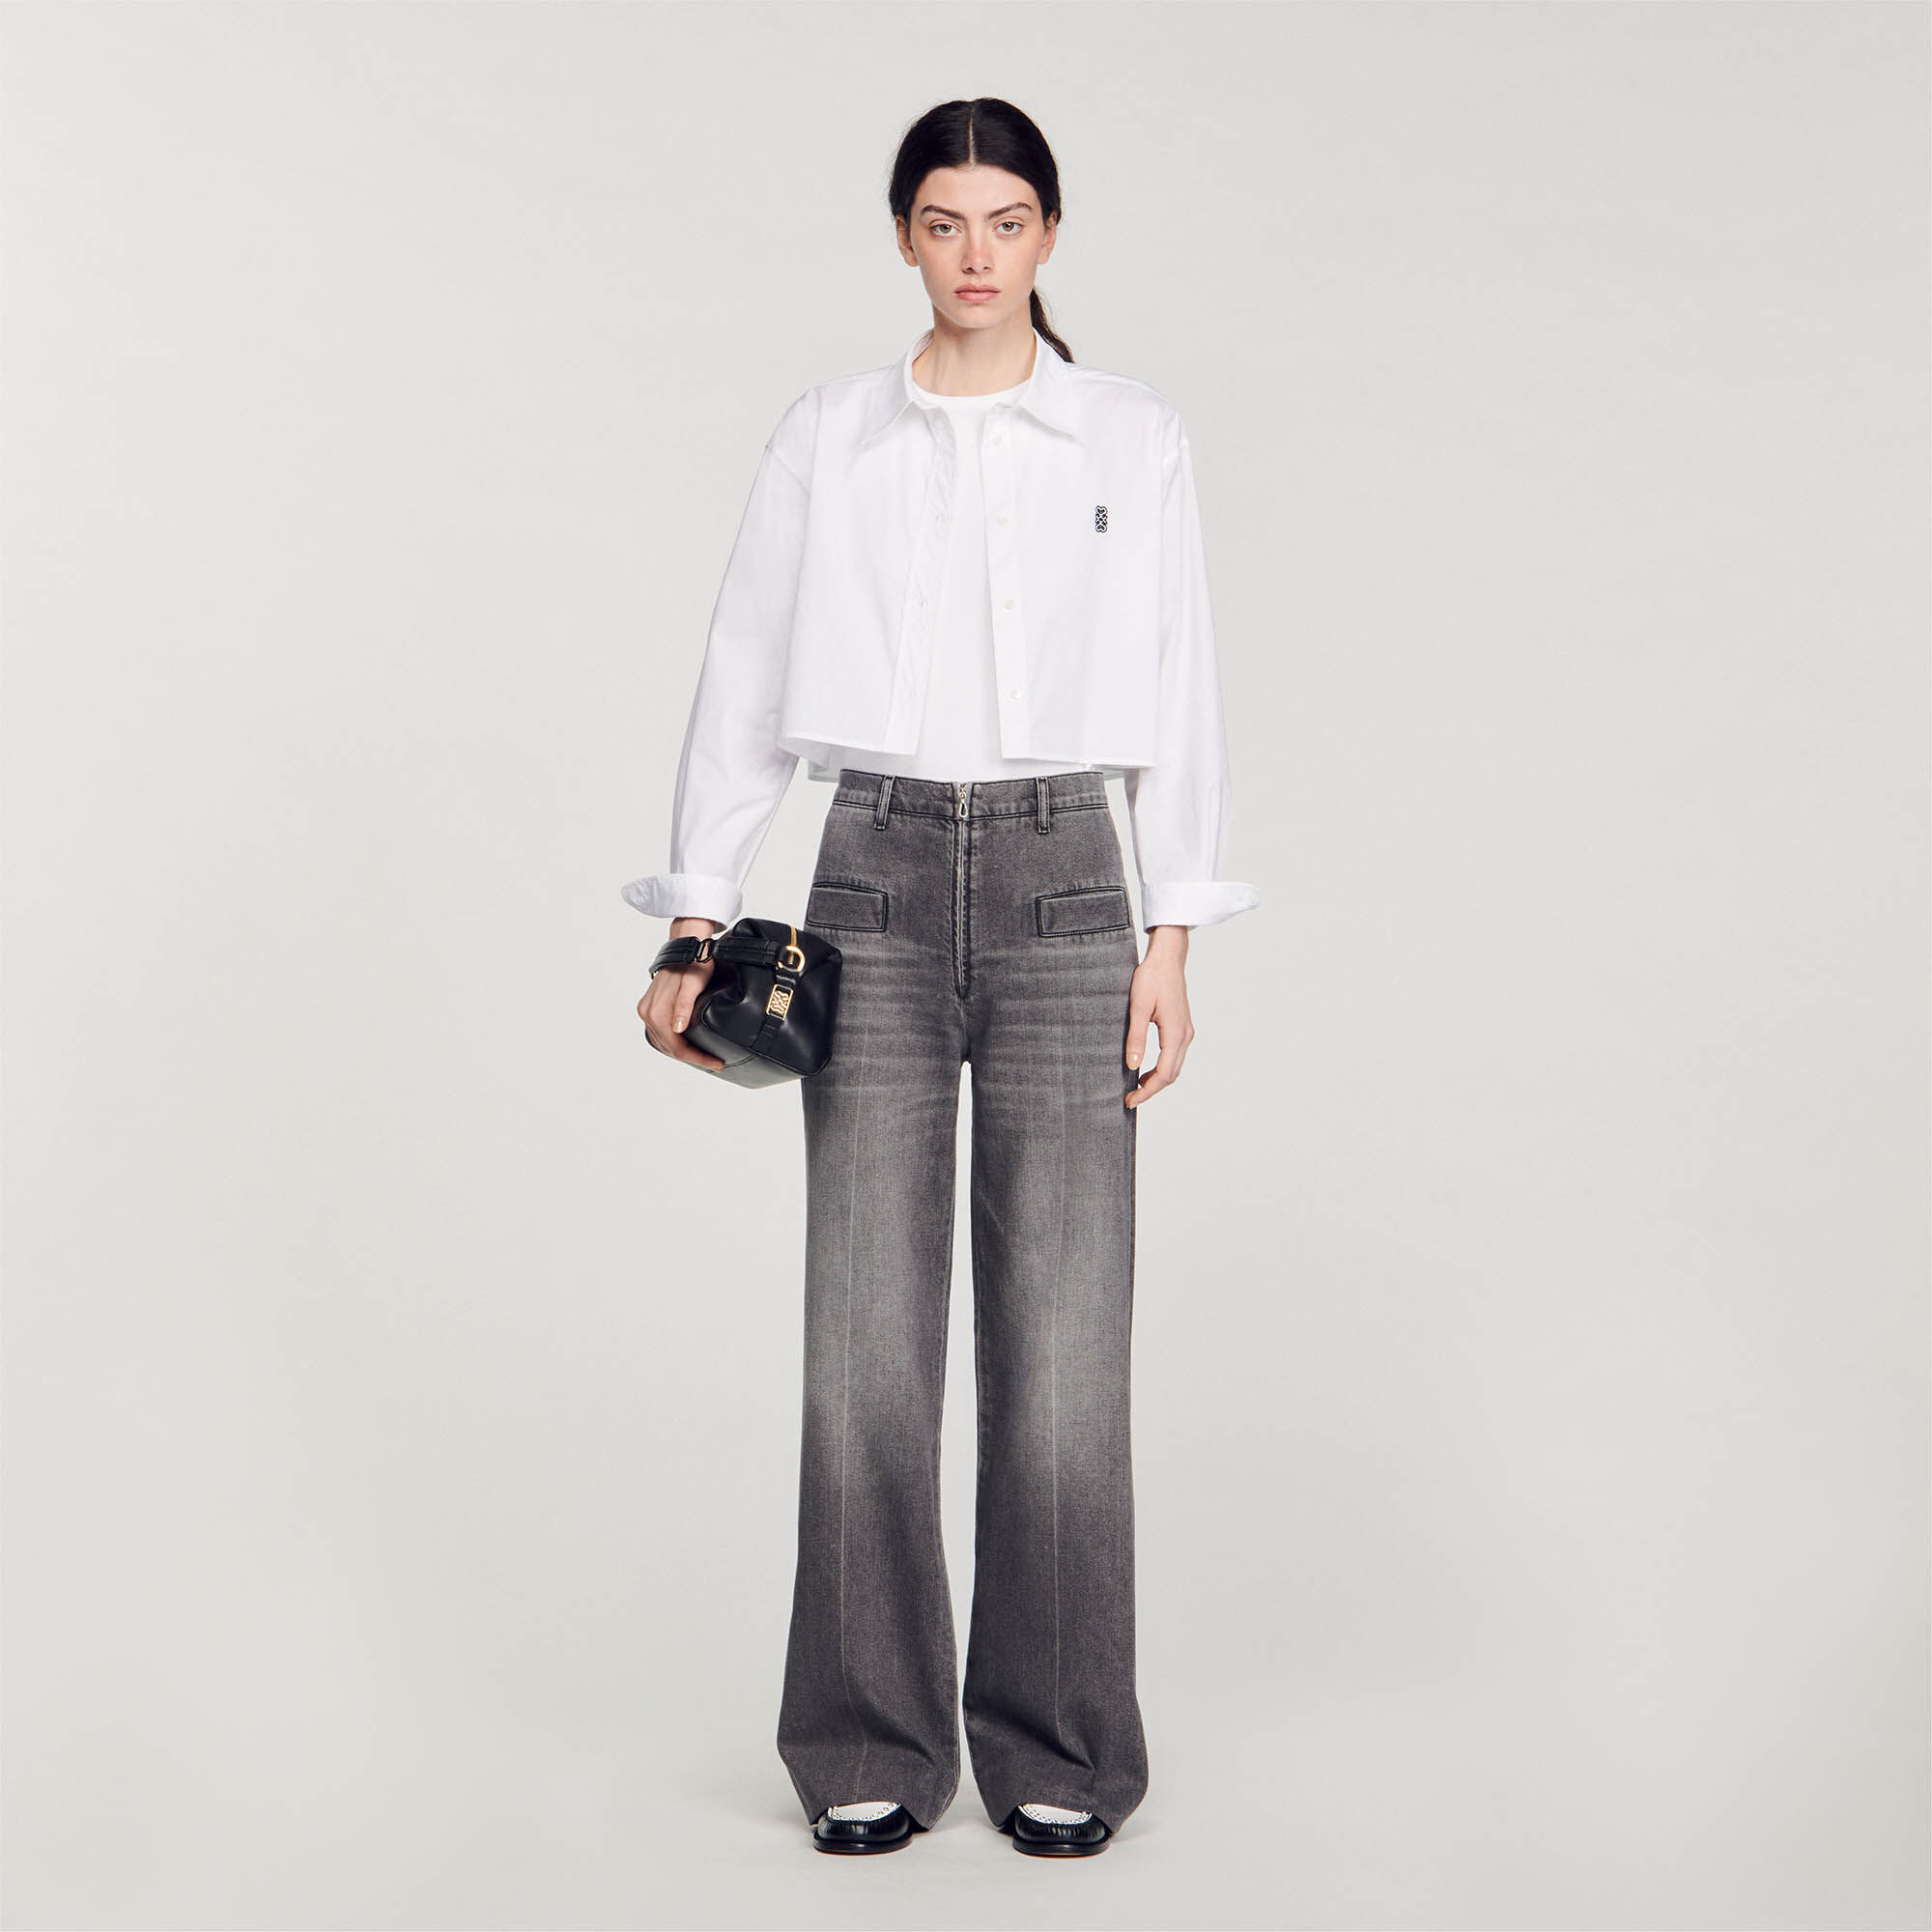 Jeans for women | Sandro Paris